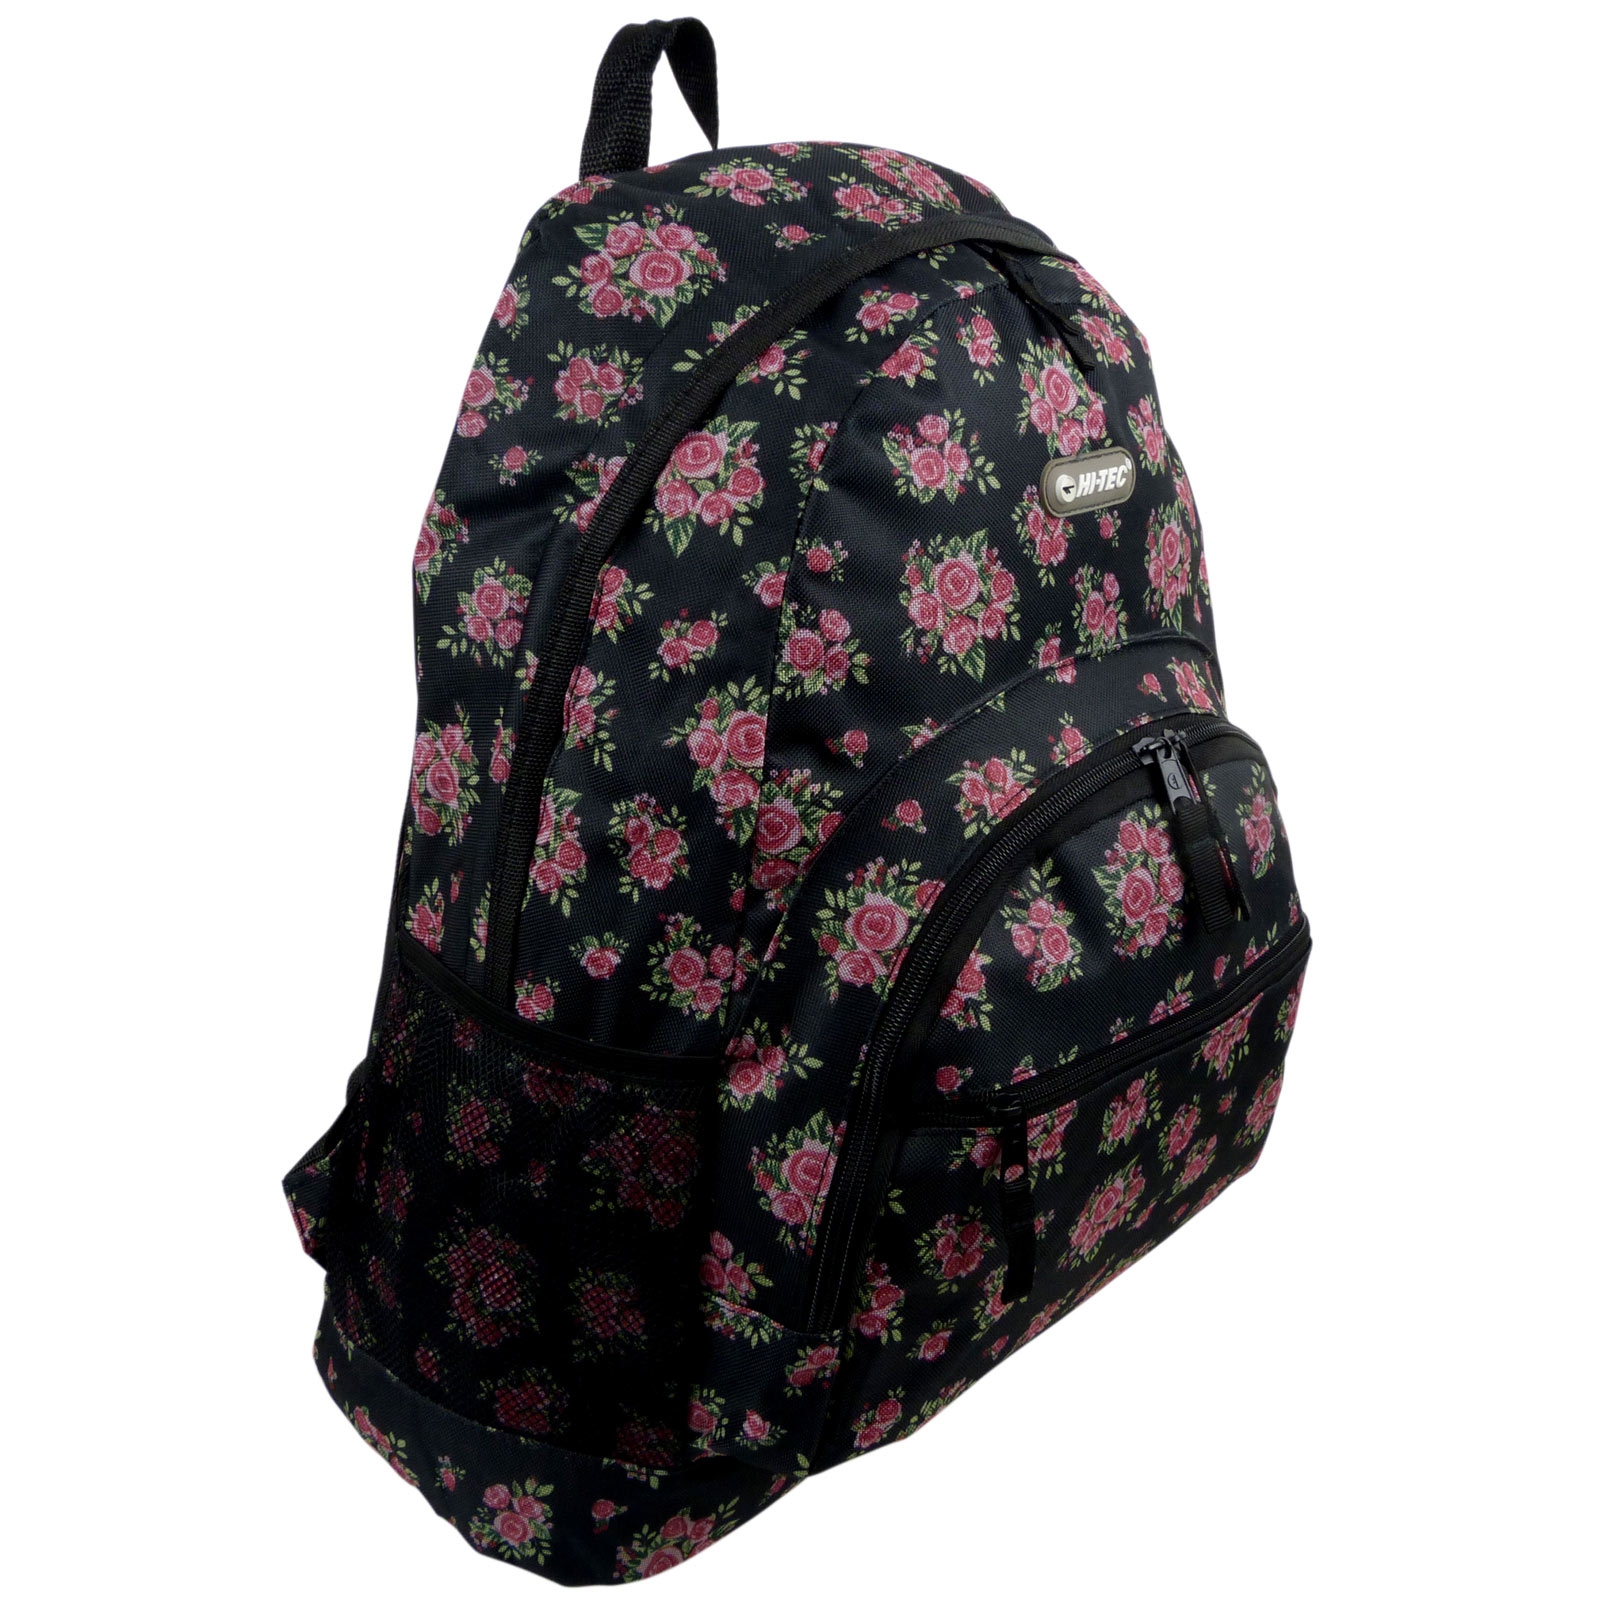 HI-TEC Ladies Girls School Backpack Rucksack Gym Flight Travel College Bag 